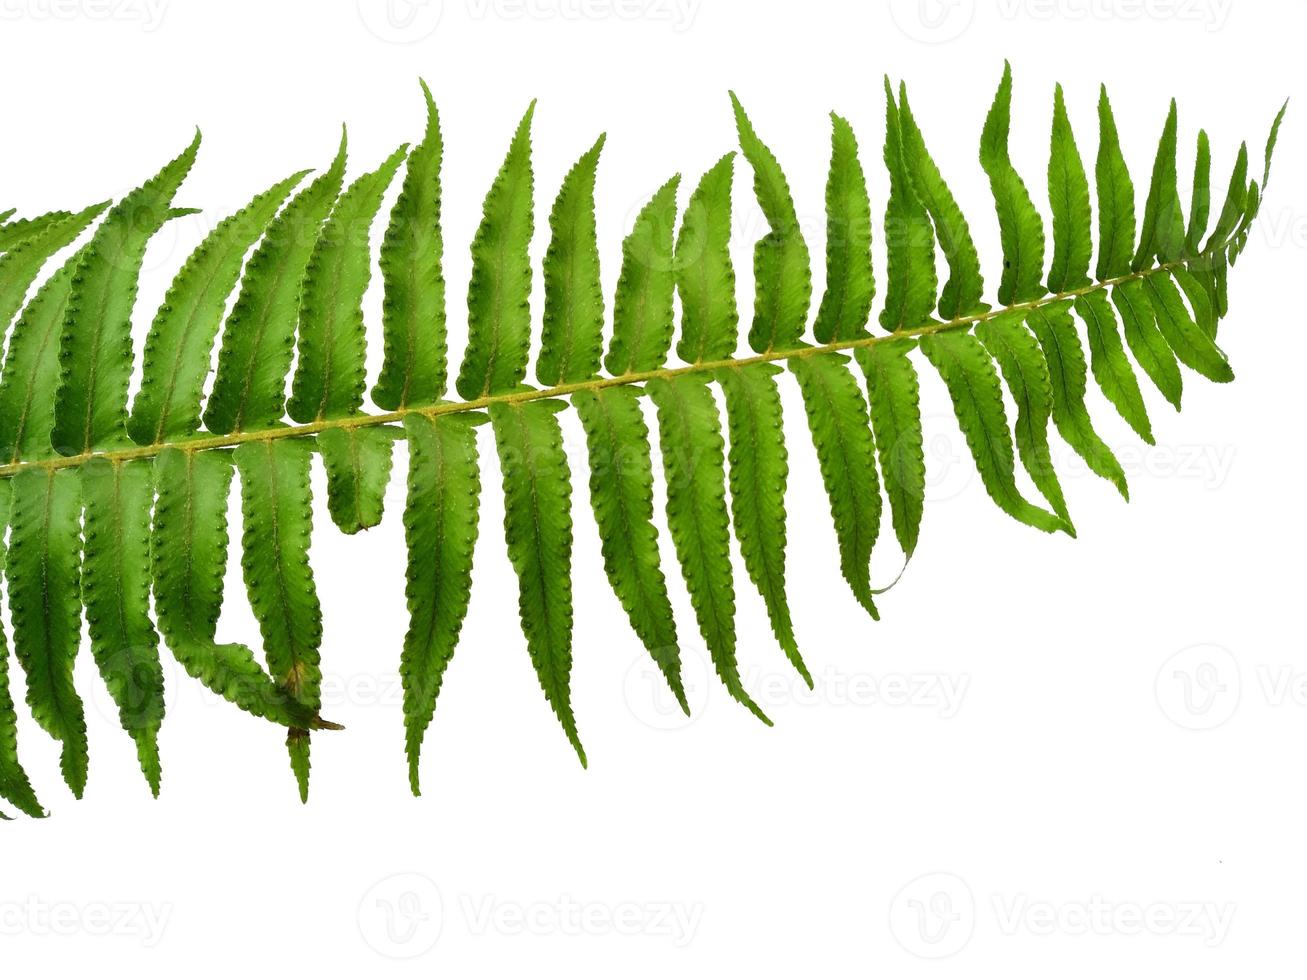 groene polypodiophyta bladeren geïsoleerd op een witte achtergrond. groene bladtextuur foto